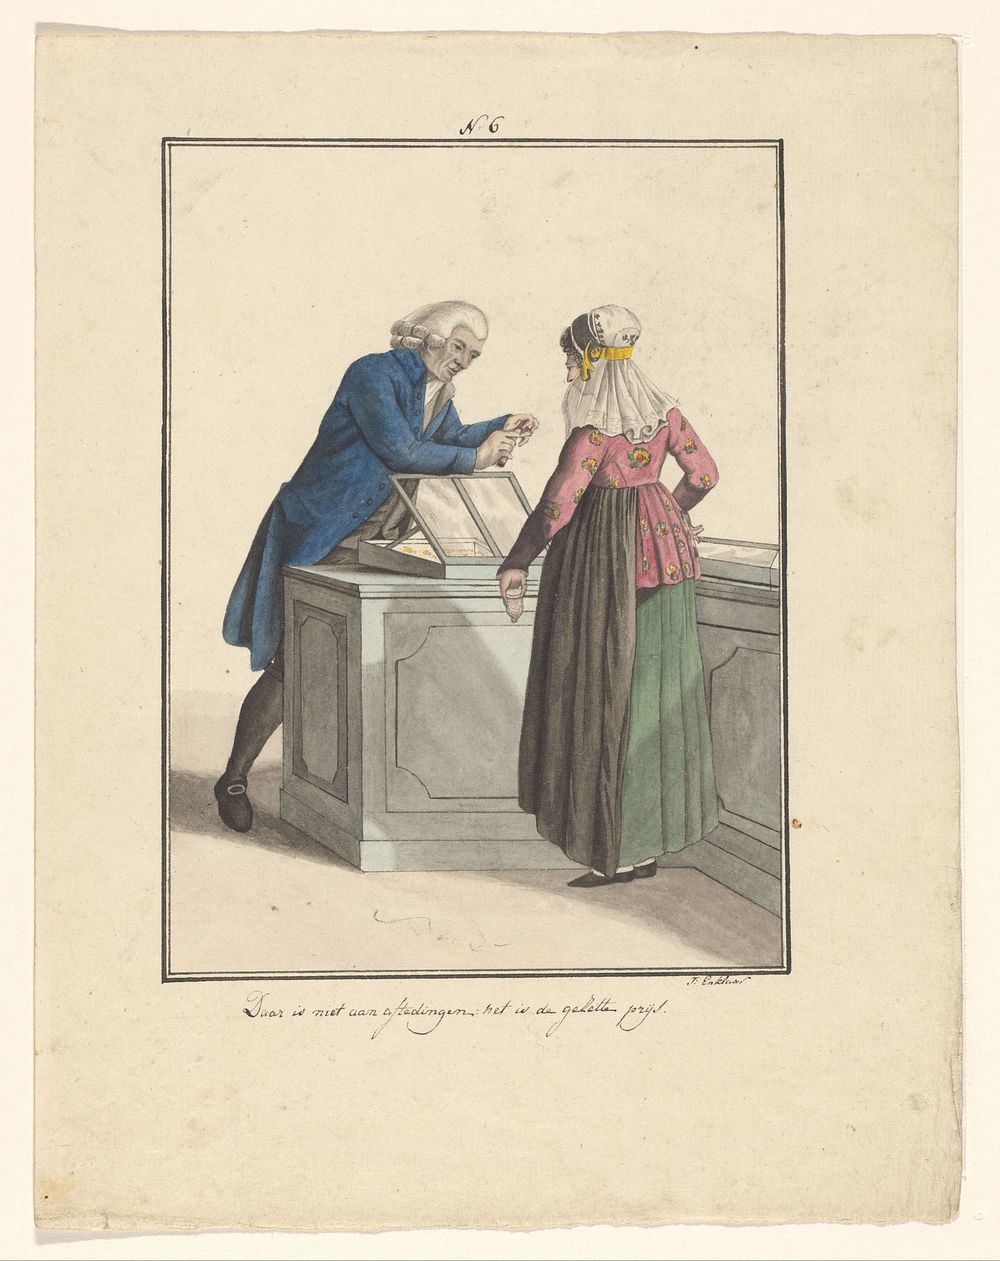 Winkelier van de Evangelische Broedergemeente met een klant (in or after 1803 - c. 1899) by J Enklaar and Ludwig Gottlieb…